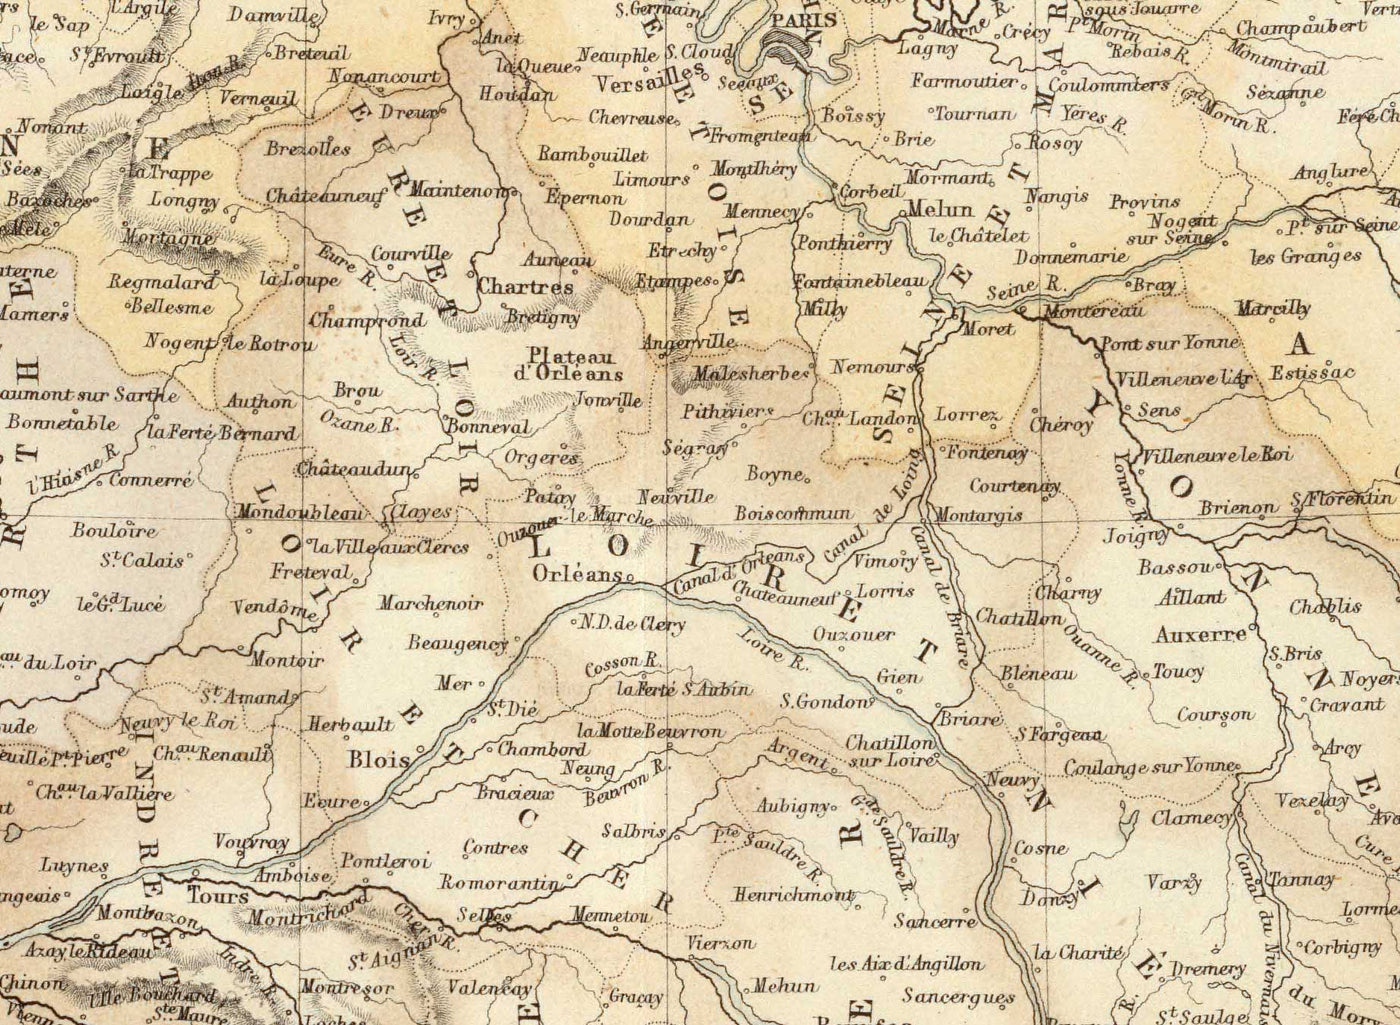 Mapa antiguo de Francia y sus posesiones extranjeras, 1872 por Archibald Fullarton - Argelia, Guayana Francesa, Córcega, Los Alpes, Martinica